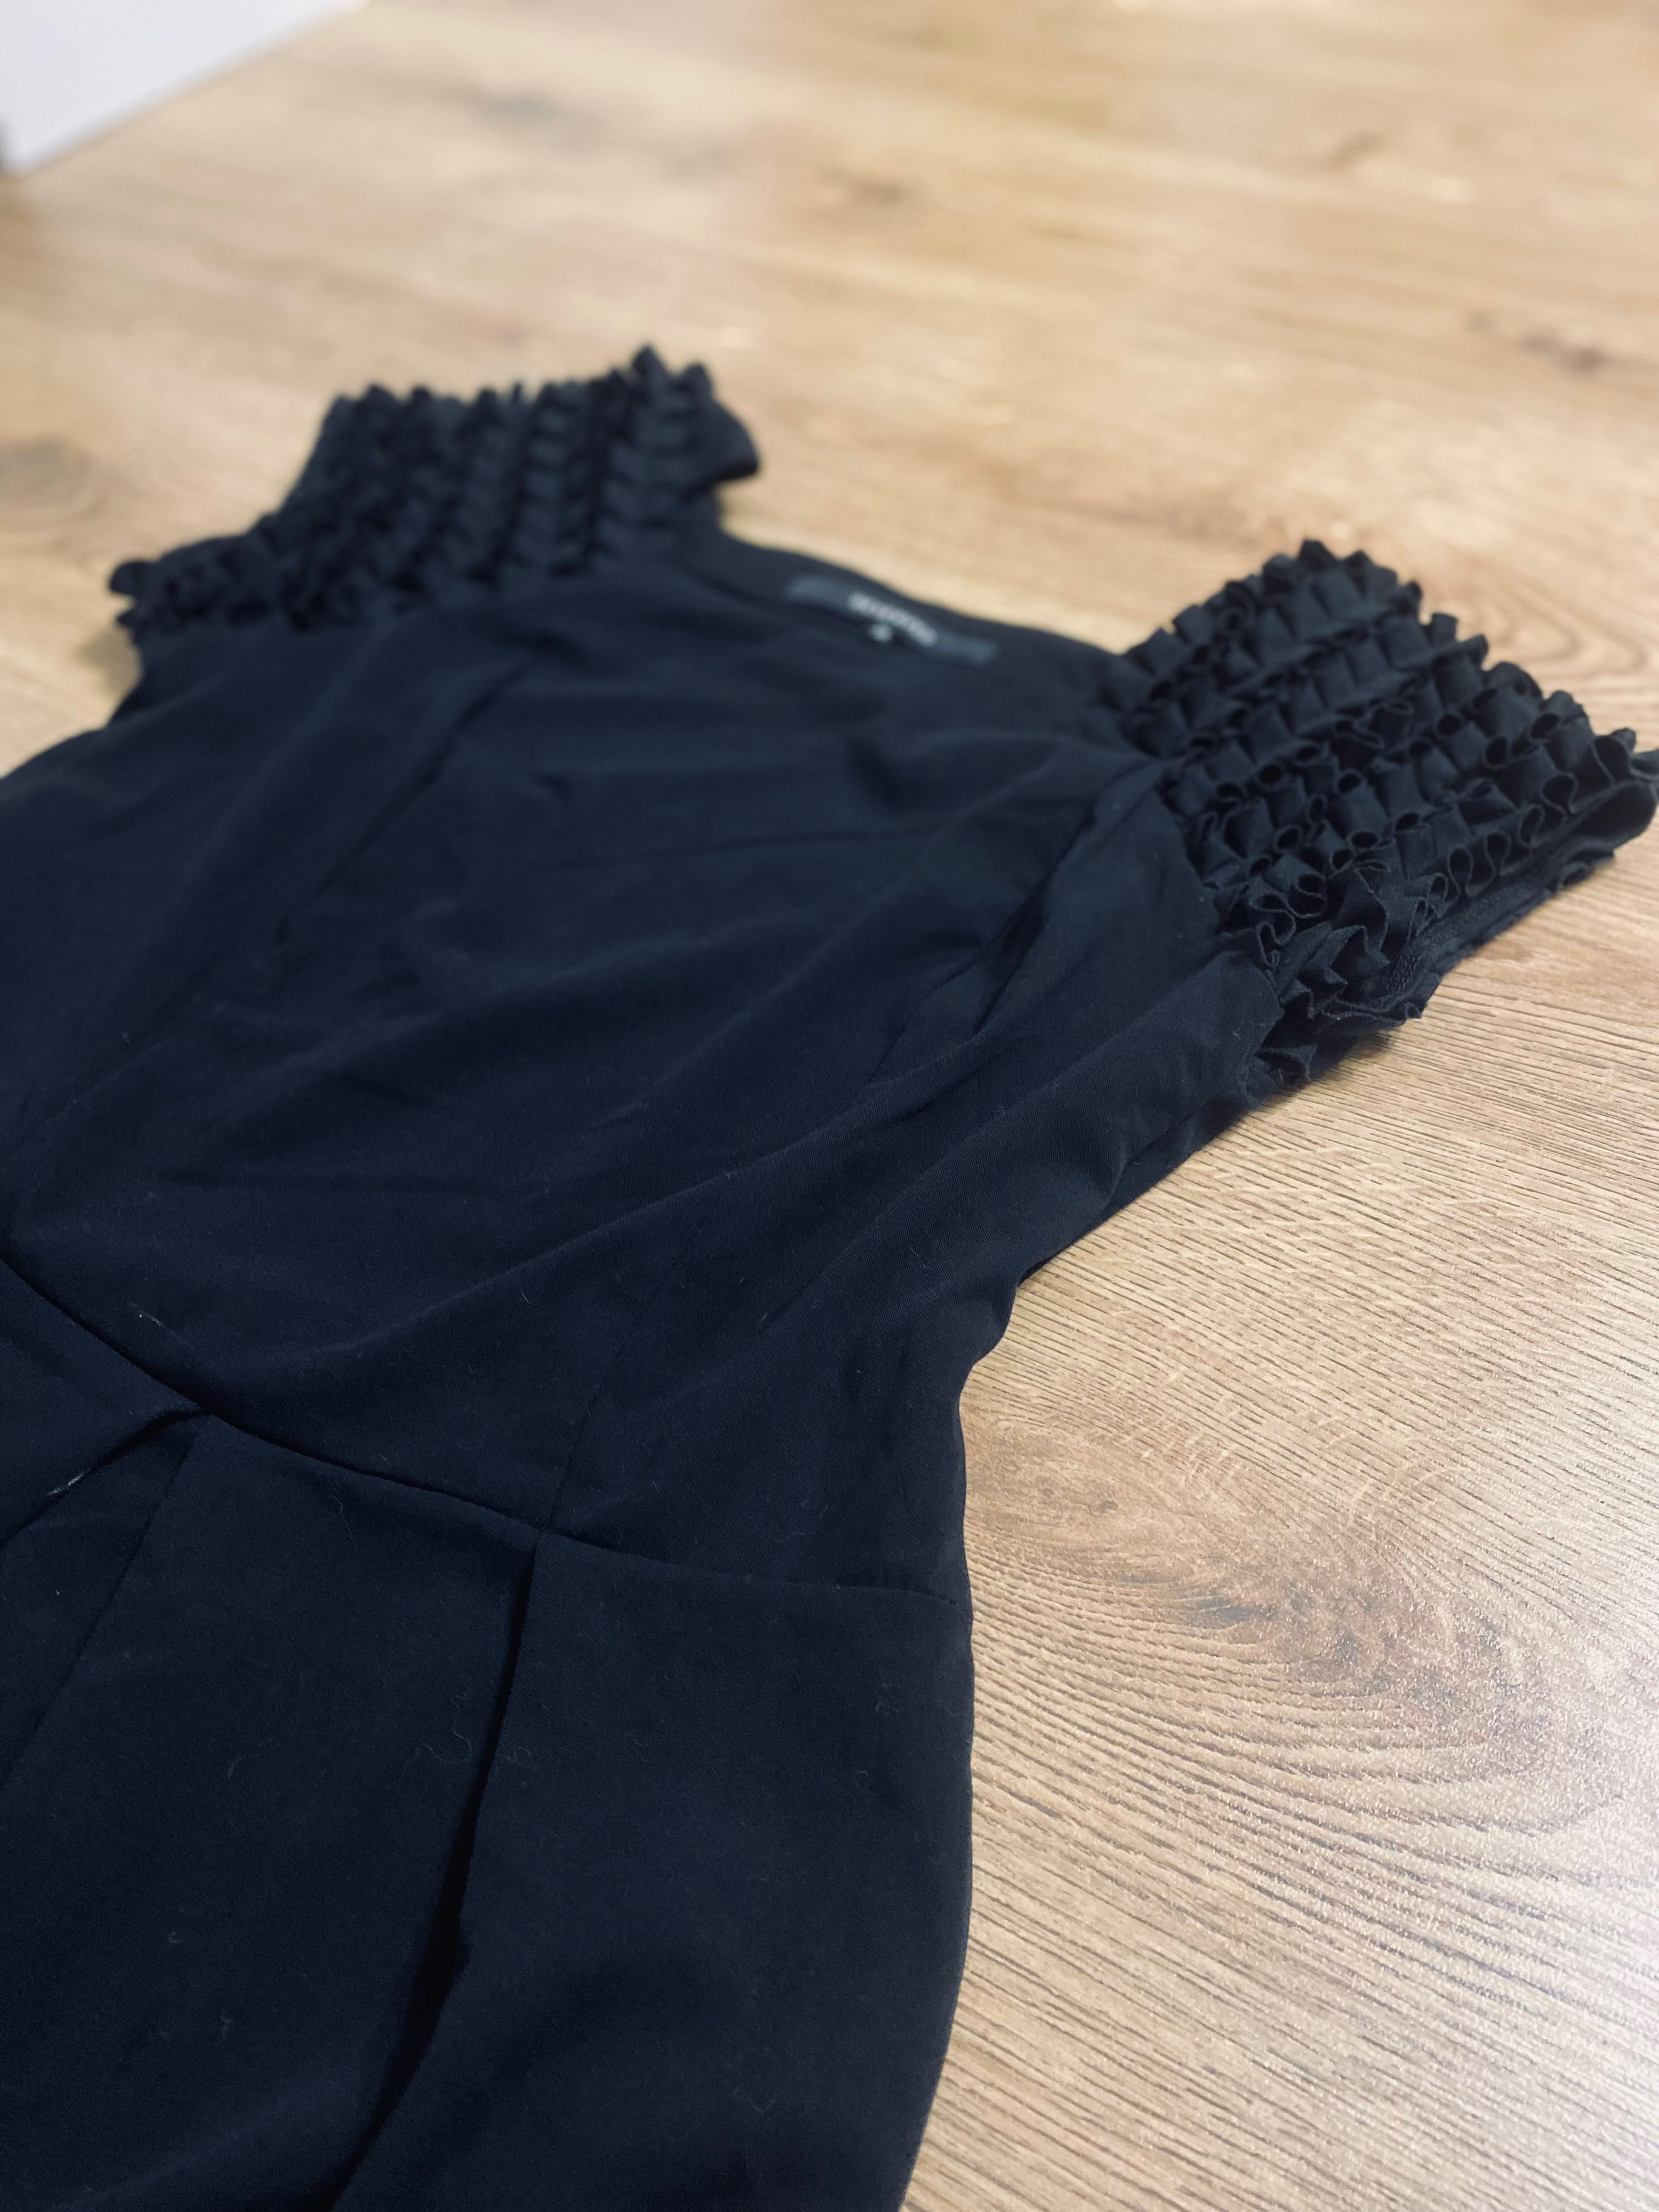 Sukienka czarna, koktajlowa Reserved rozmiar 38 ze zdobieniami